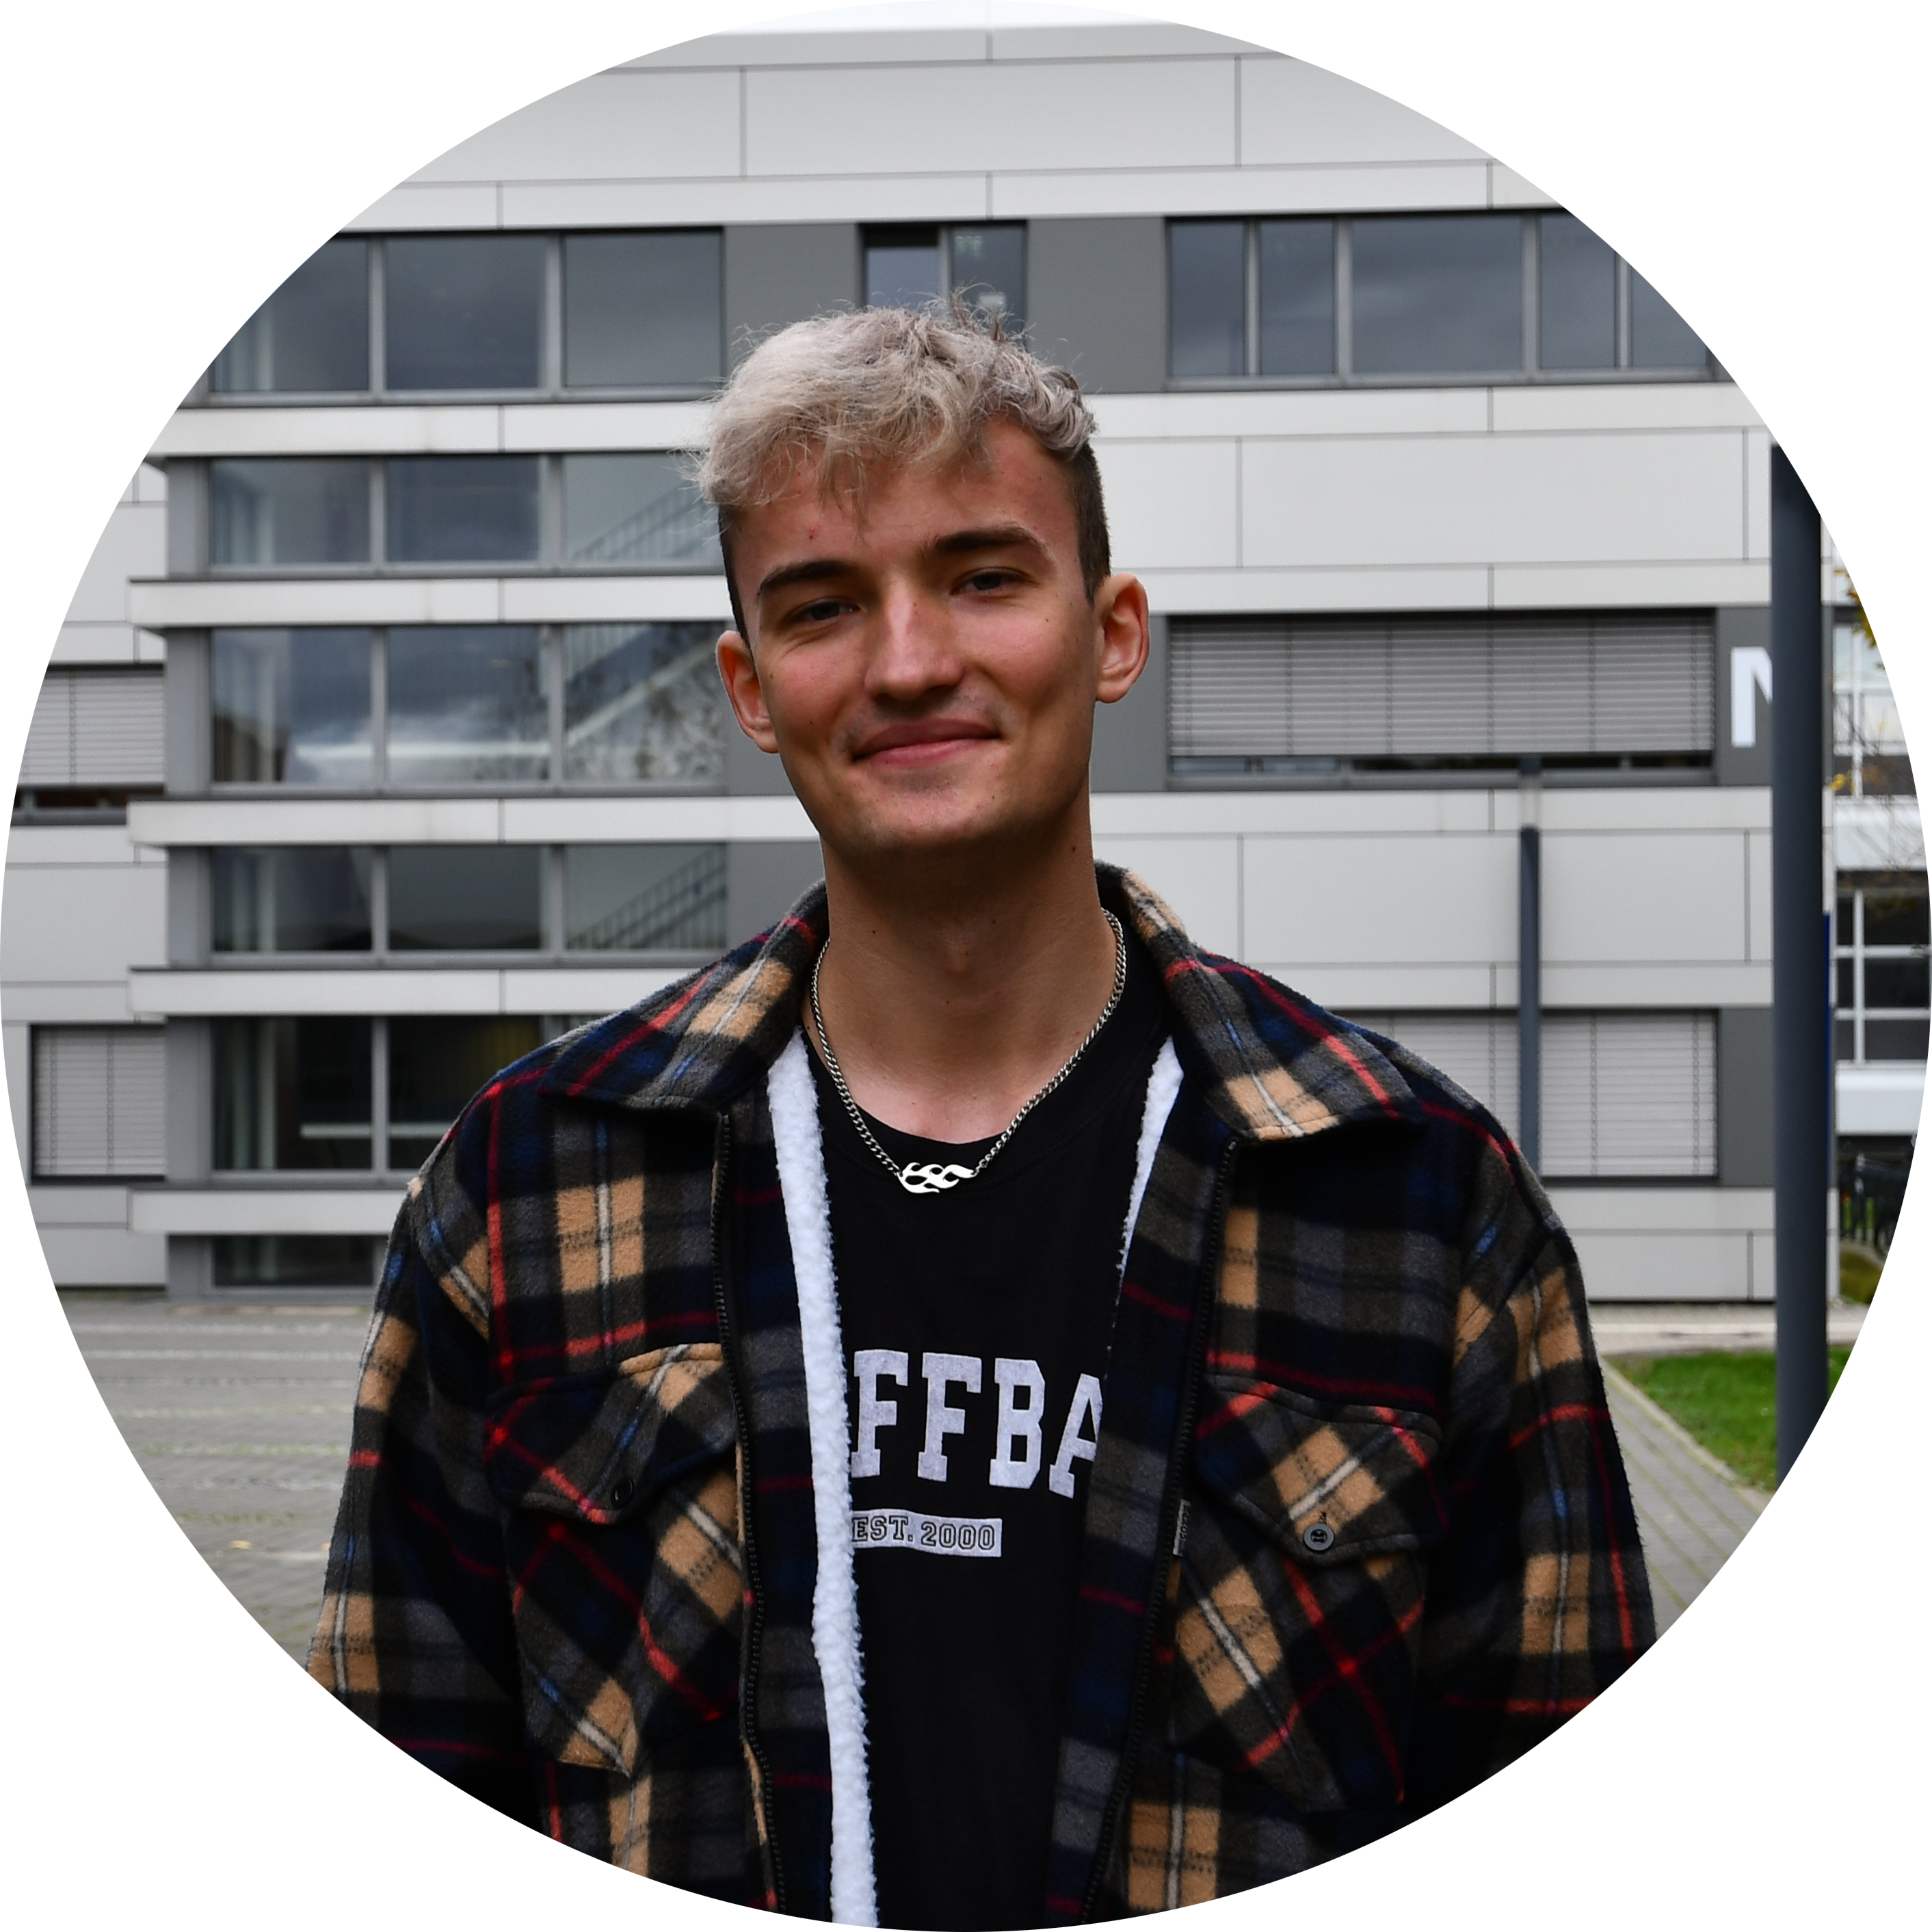 Nils Rudi Woydt, 20, studiert im 3ten Semester Chemieingenieurswesen an der FH Münster